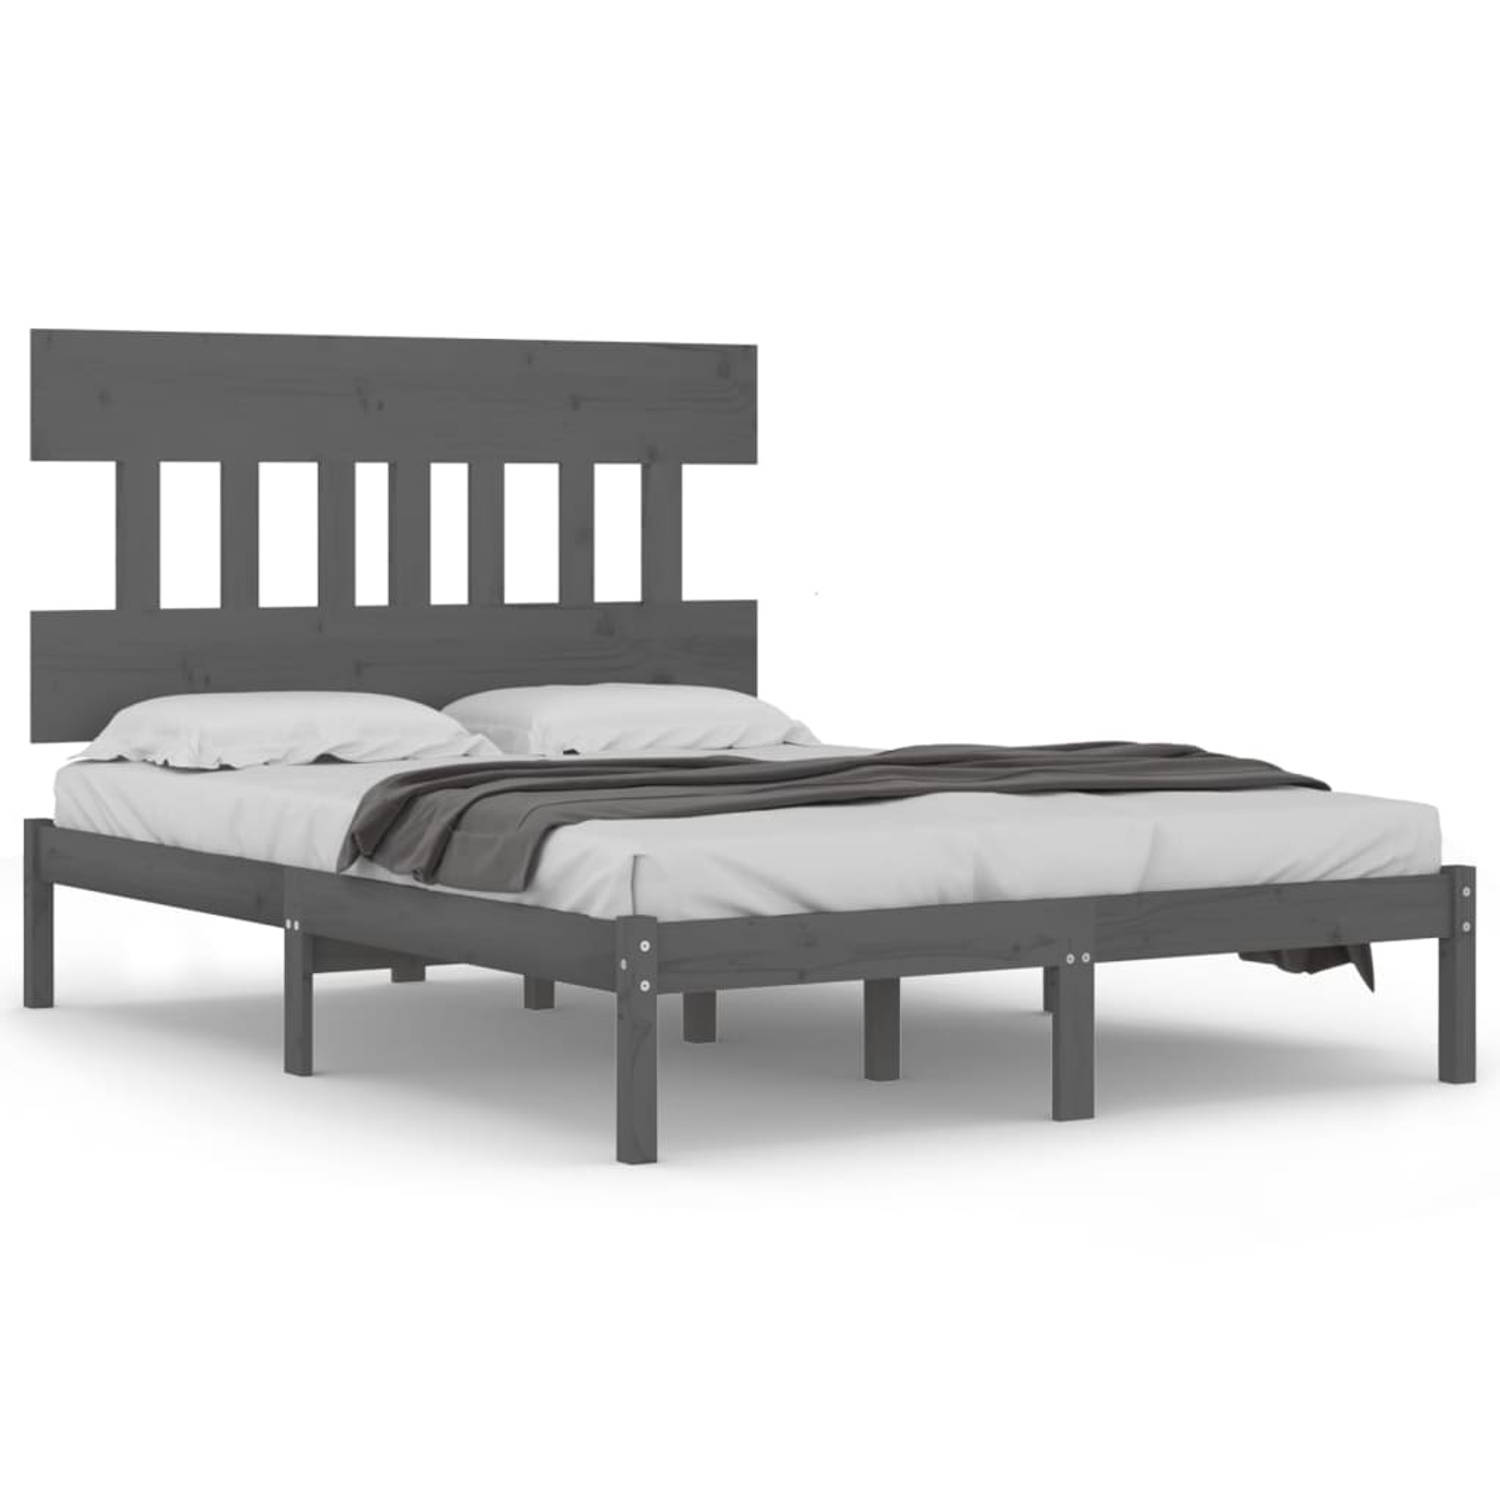 The Living Store Bedframe massief hout grijs 160x200 cm - Bedframe - Bedframes - Tweepersoonsbed - Bed - Bedombouw - Dubbel Bed - Frame - Bed Frame - Ledikant - Bedframe Met Hoofde